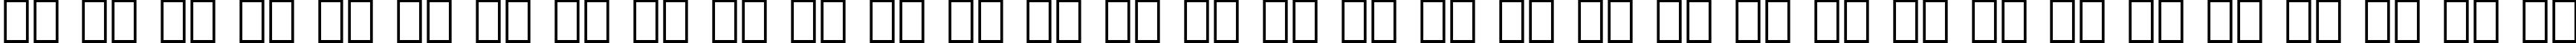 Пример написания русского алфавита шрифтом Handel Gothic BT